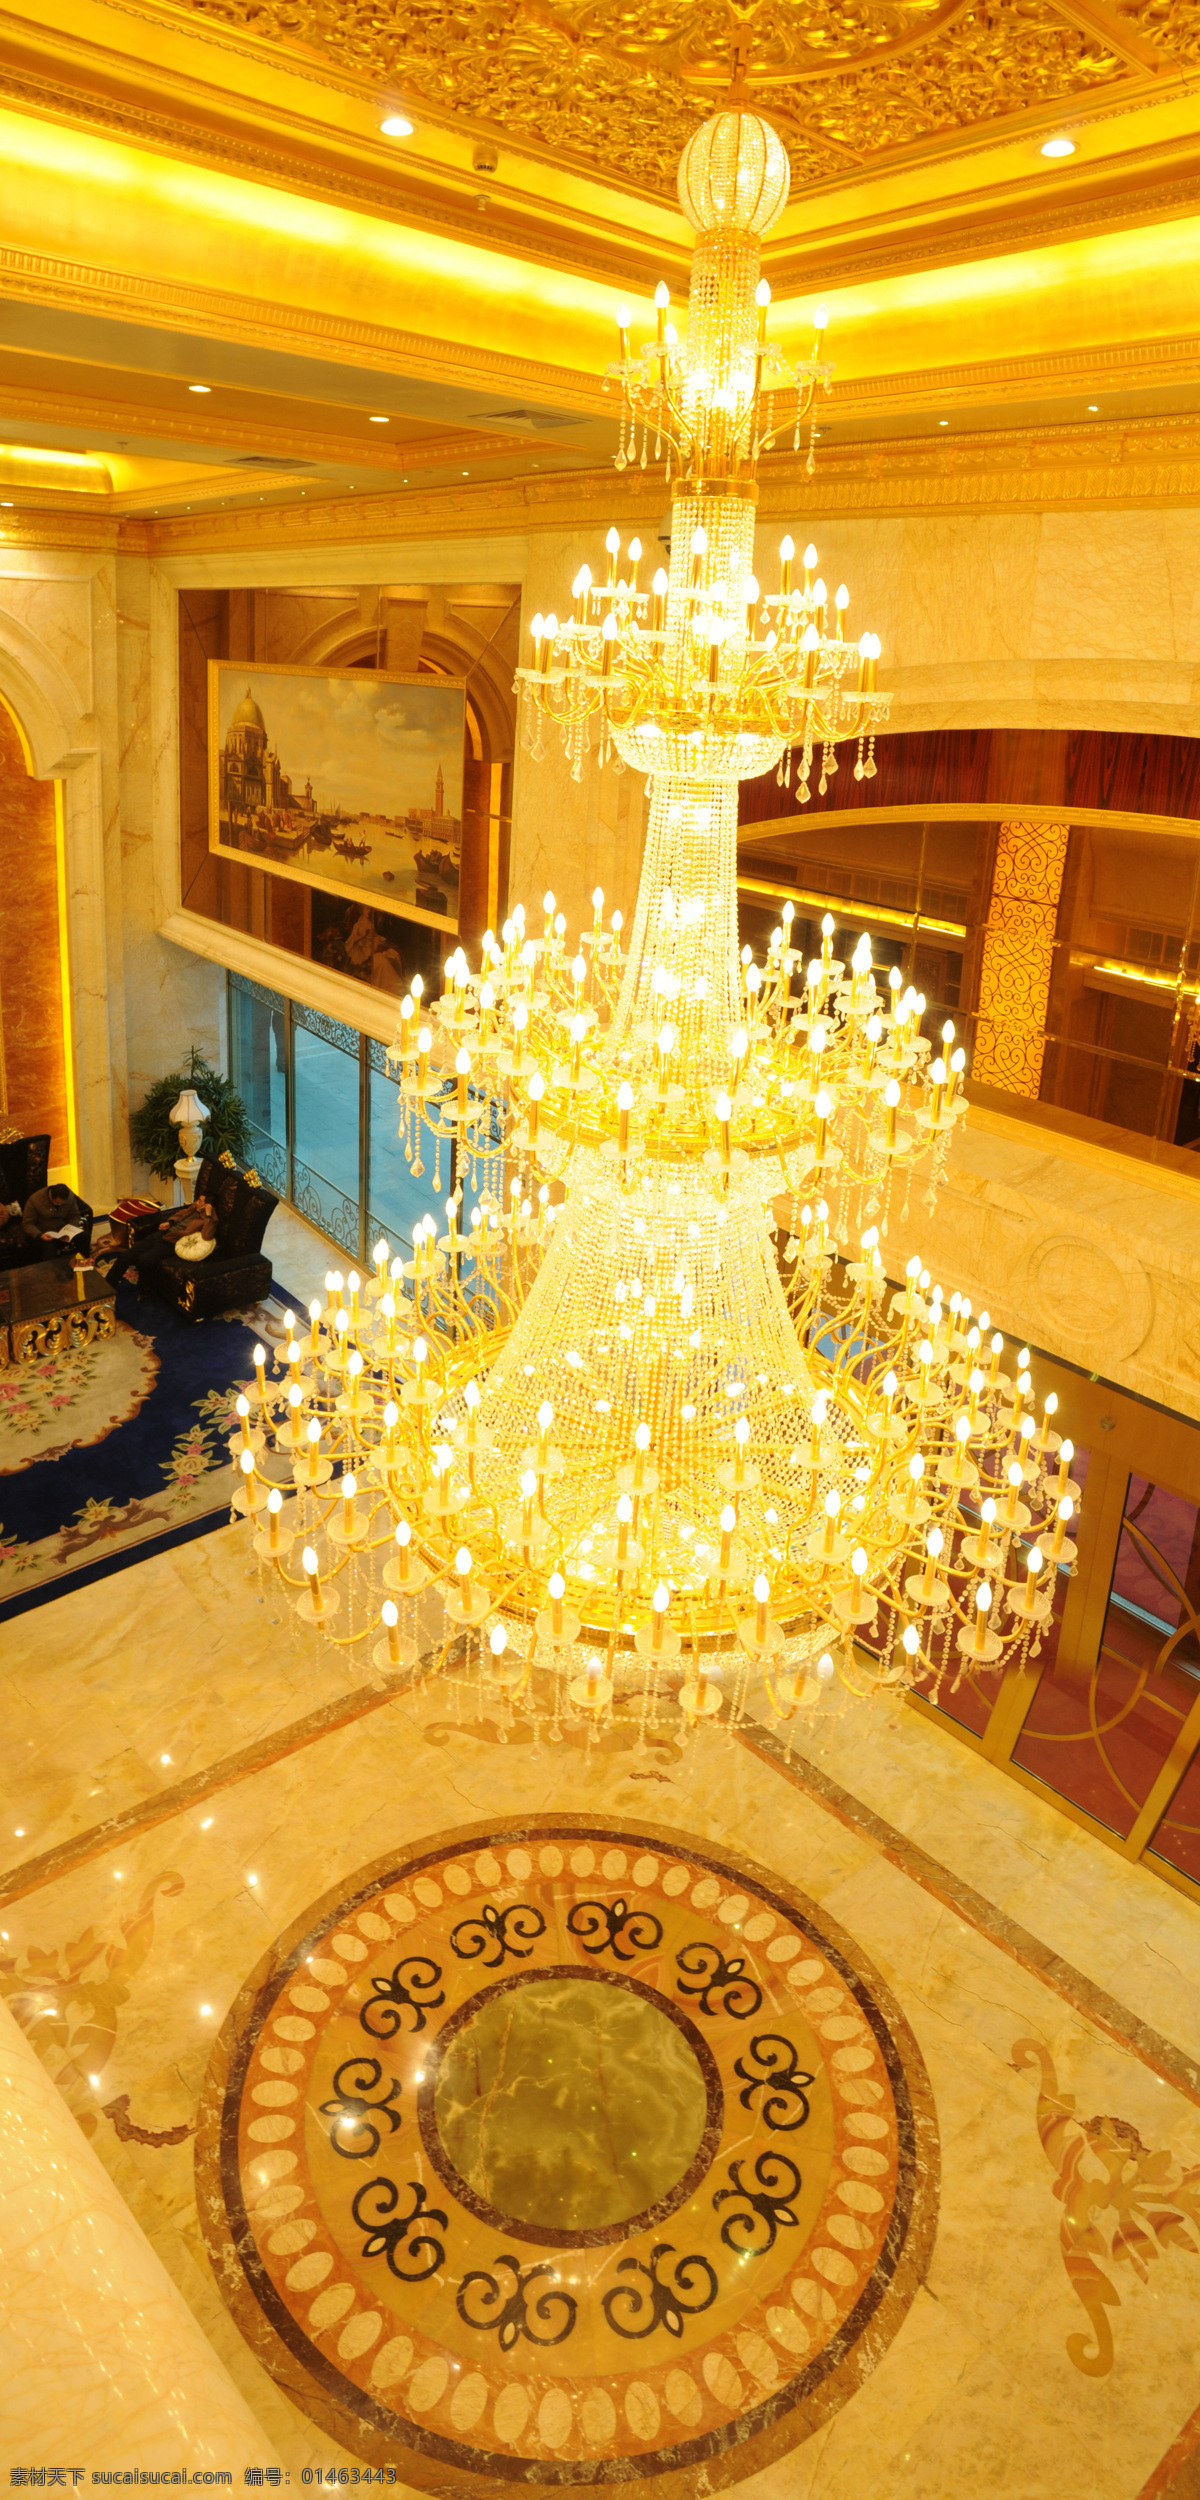 中洋 河豚 会馆 大堂 建筑园林 室内摄影 中洋河豚会馆 贵族风范 2m 水晶 吊灯 装饰素材 灯饰素材